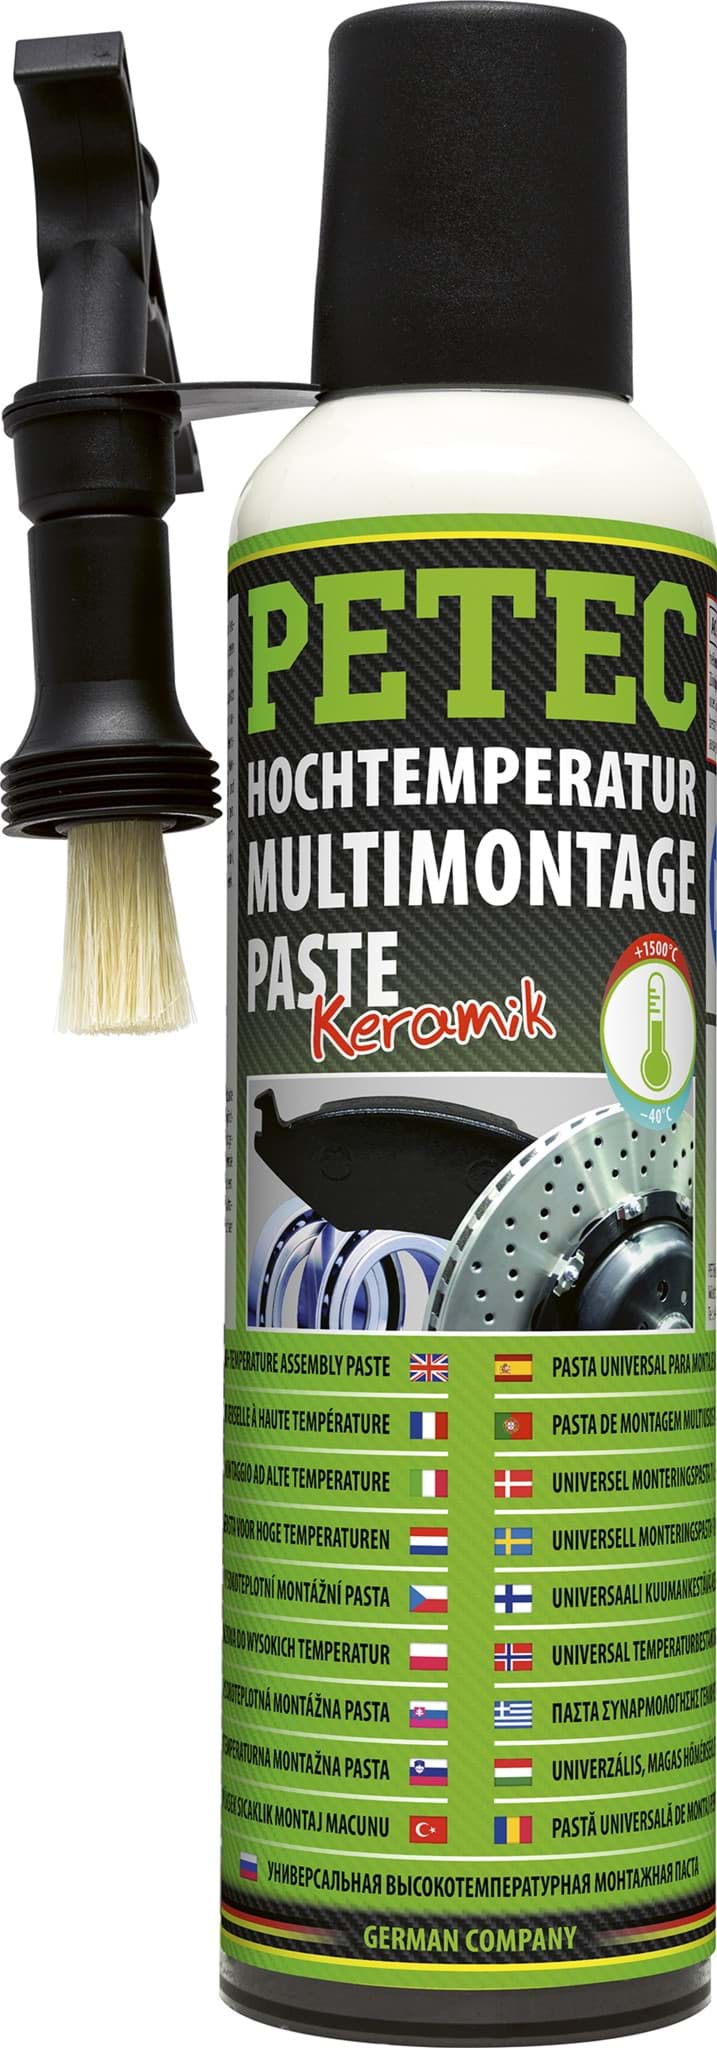 Petec Hochtemperatur Montagepaste Keramikpaste bis 1500°C resmi